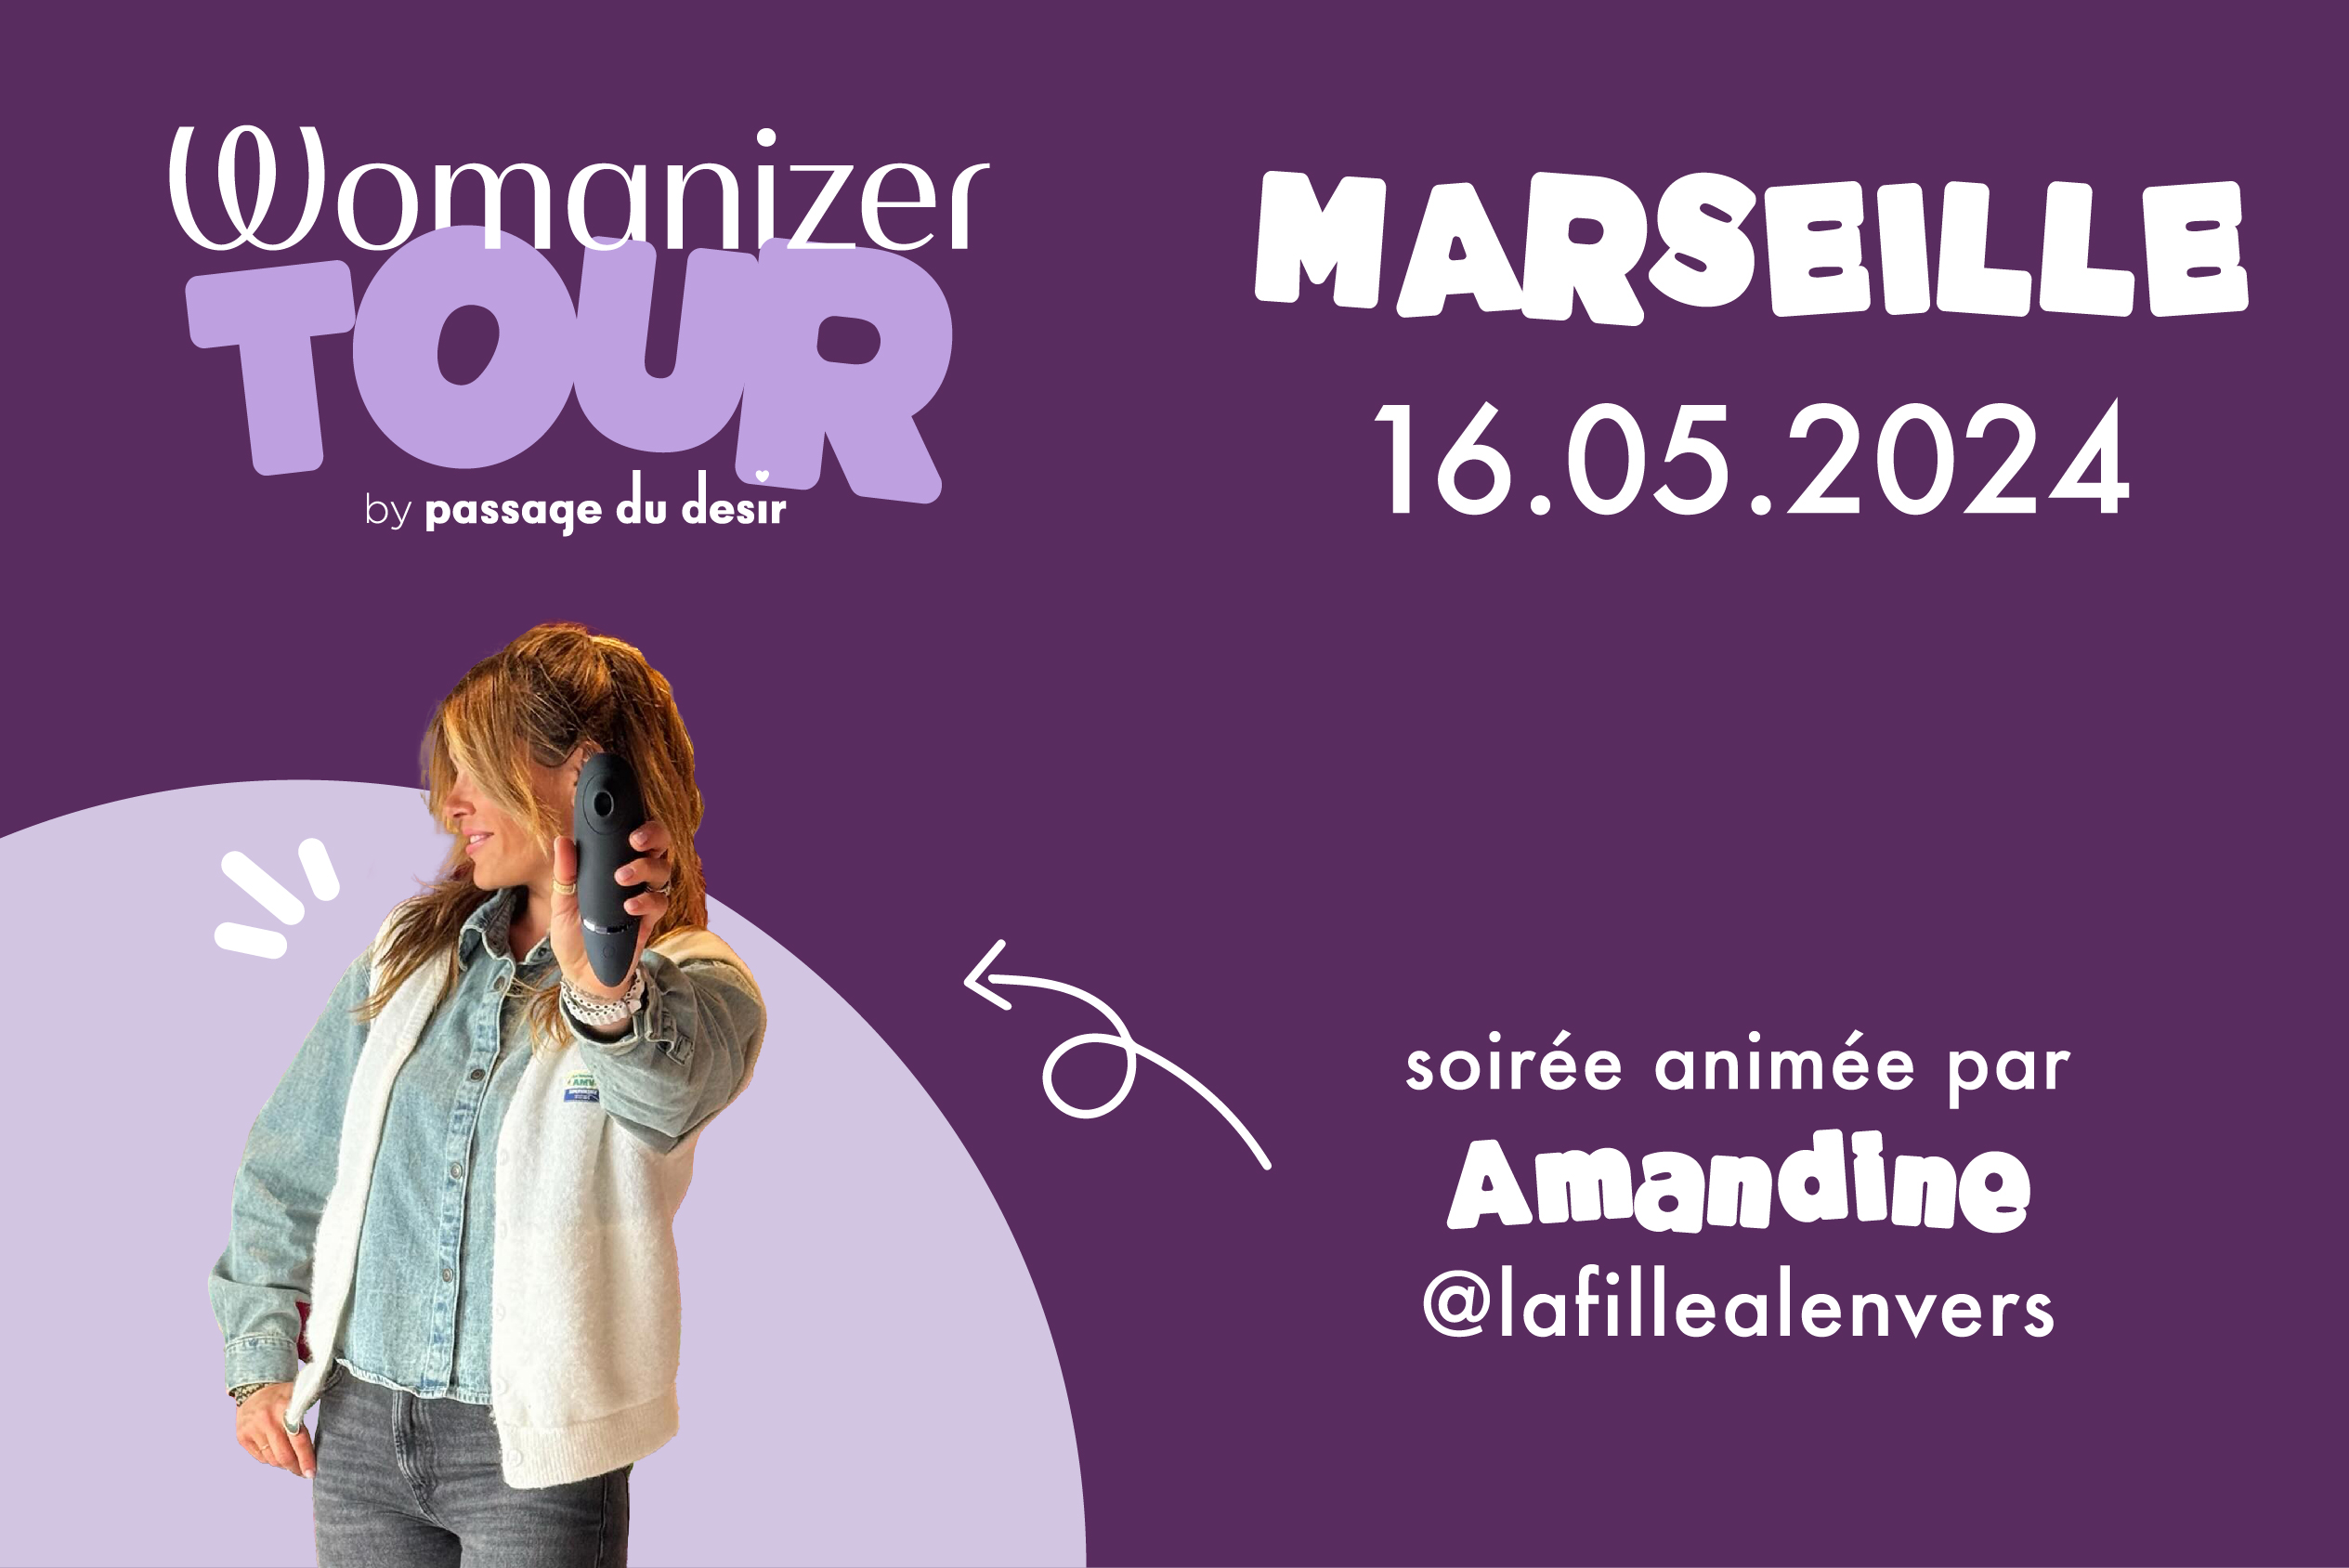 Womanizer tour Marseille